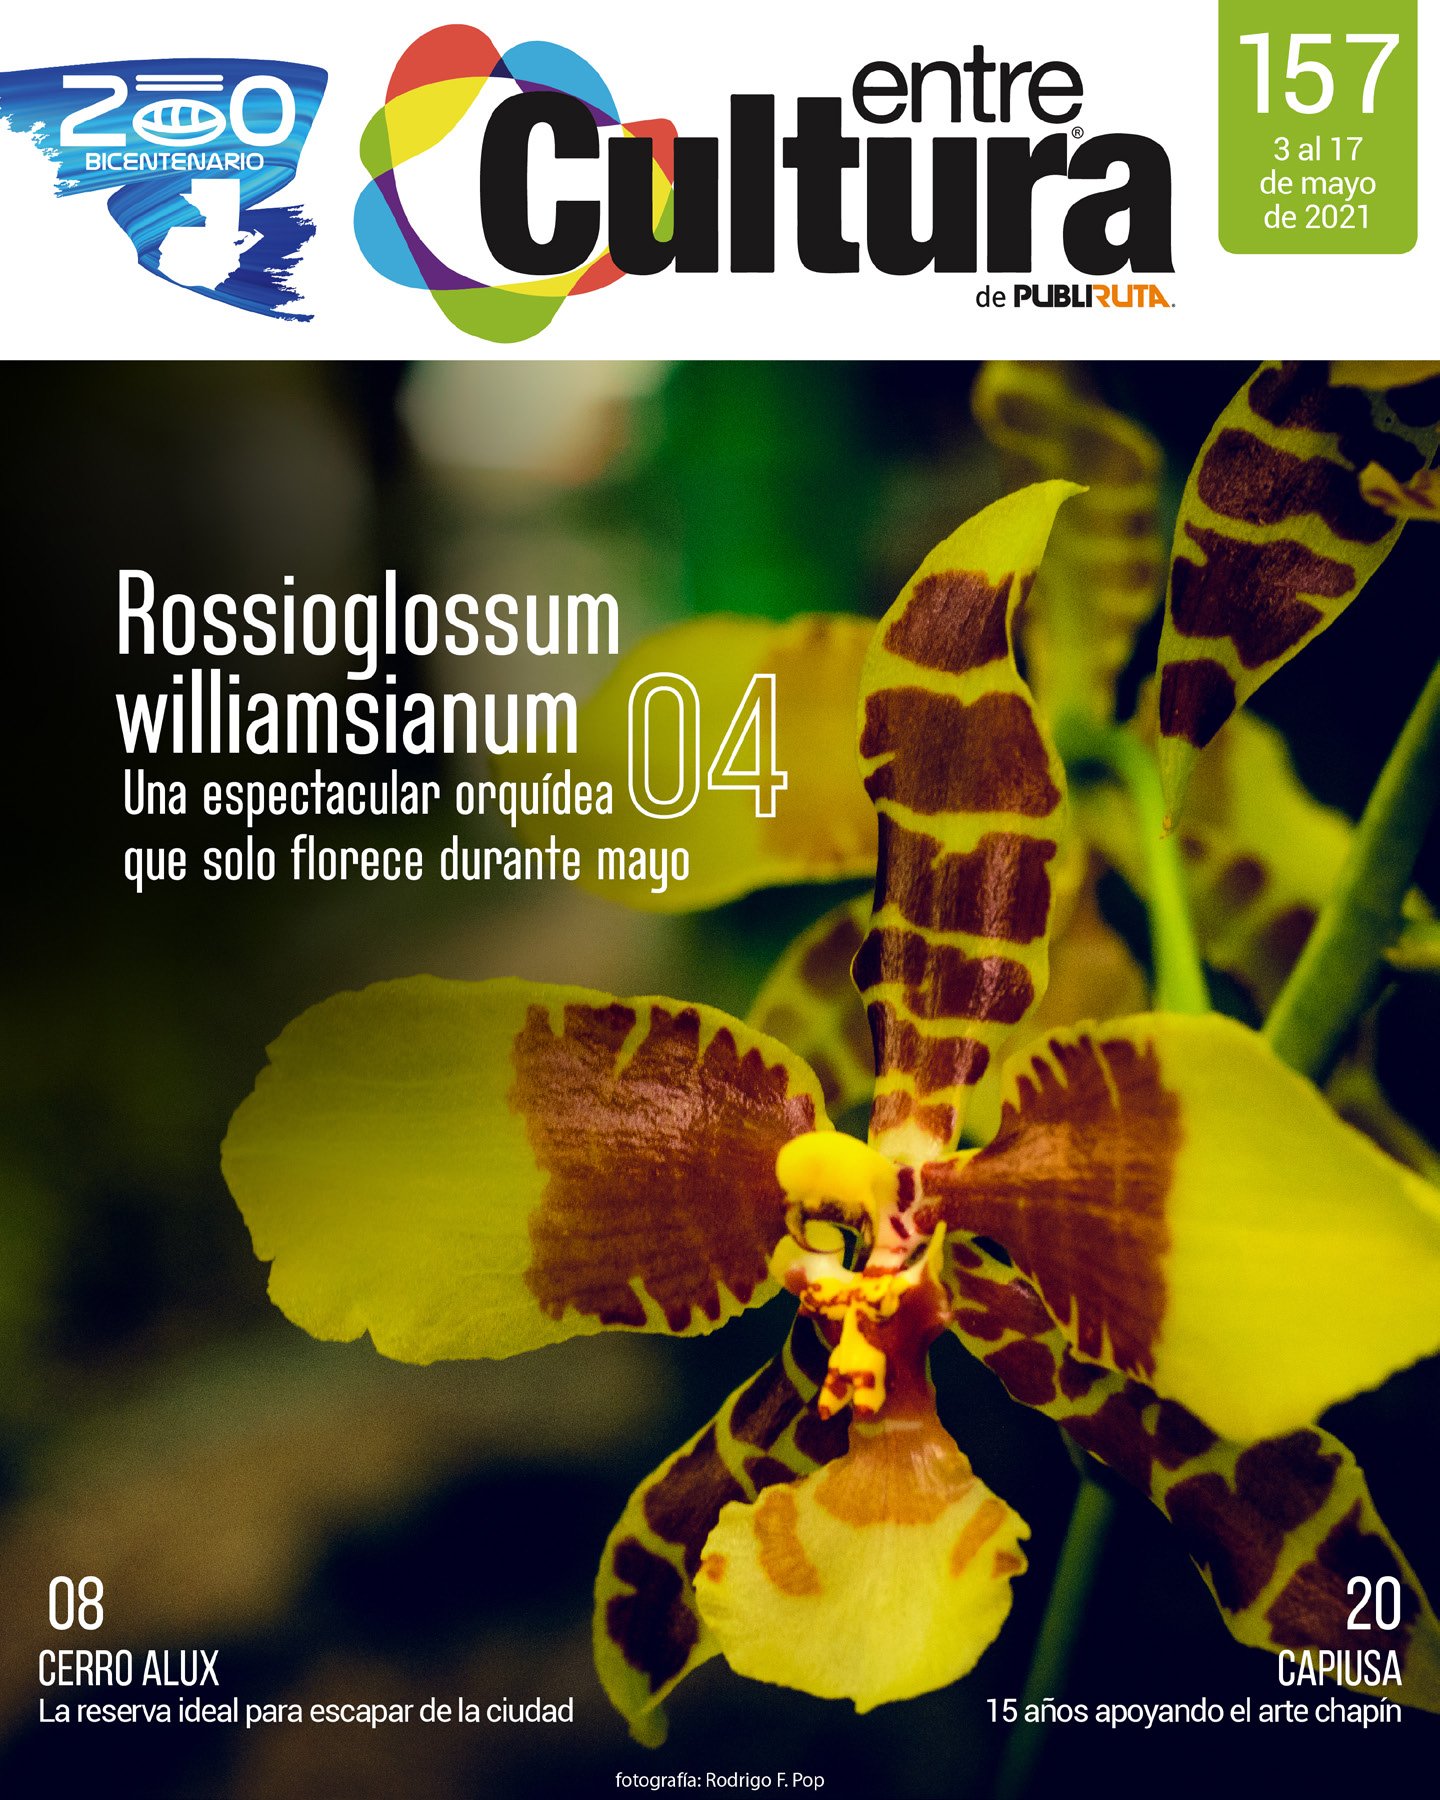 EntreCultura 157: Rossioglossum williamsianum